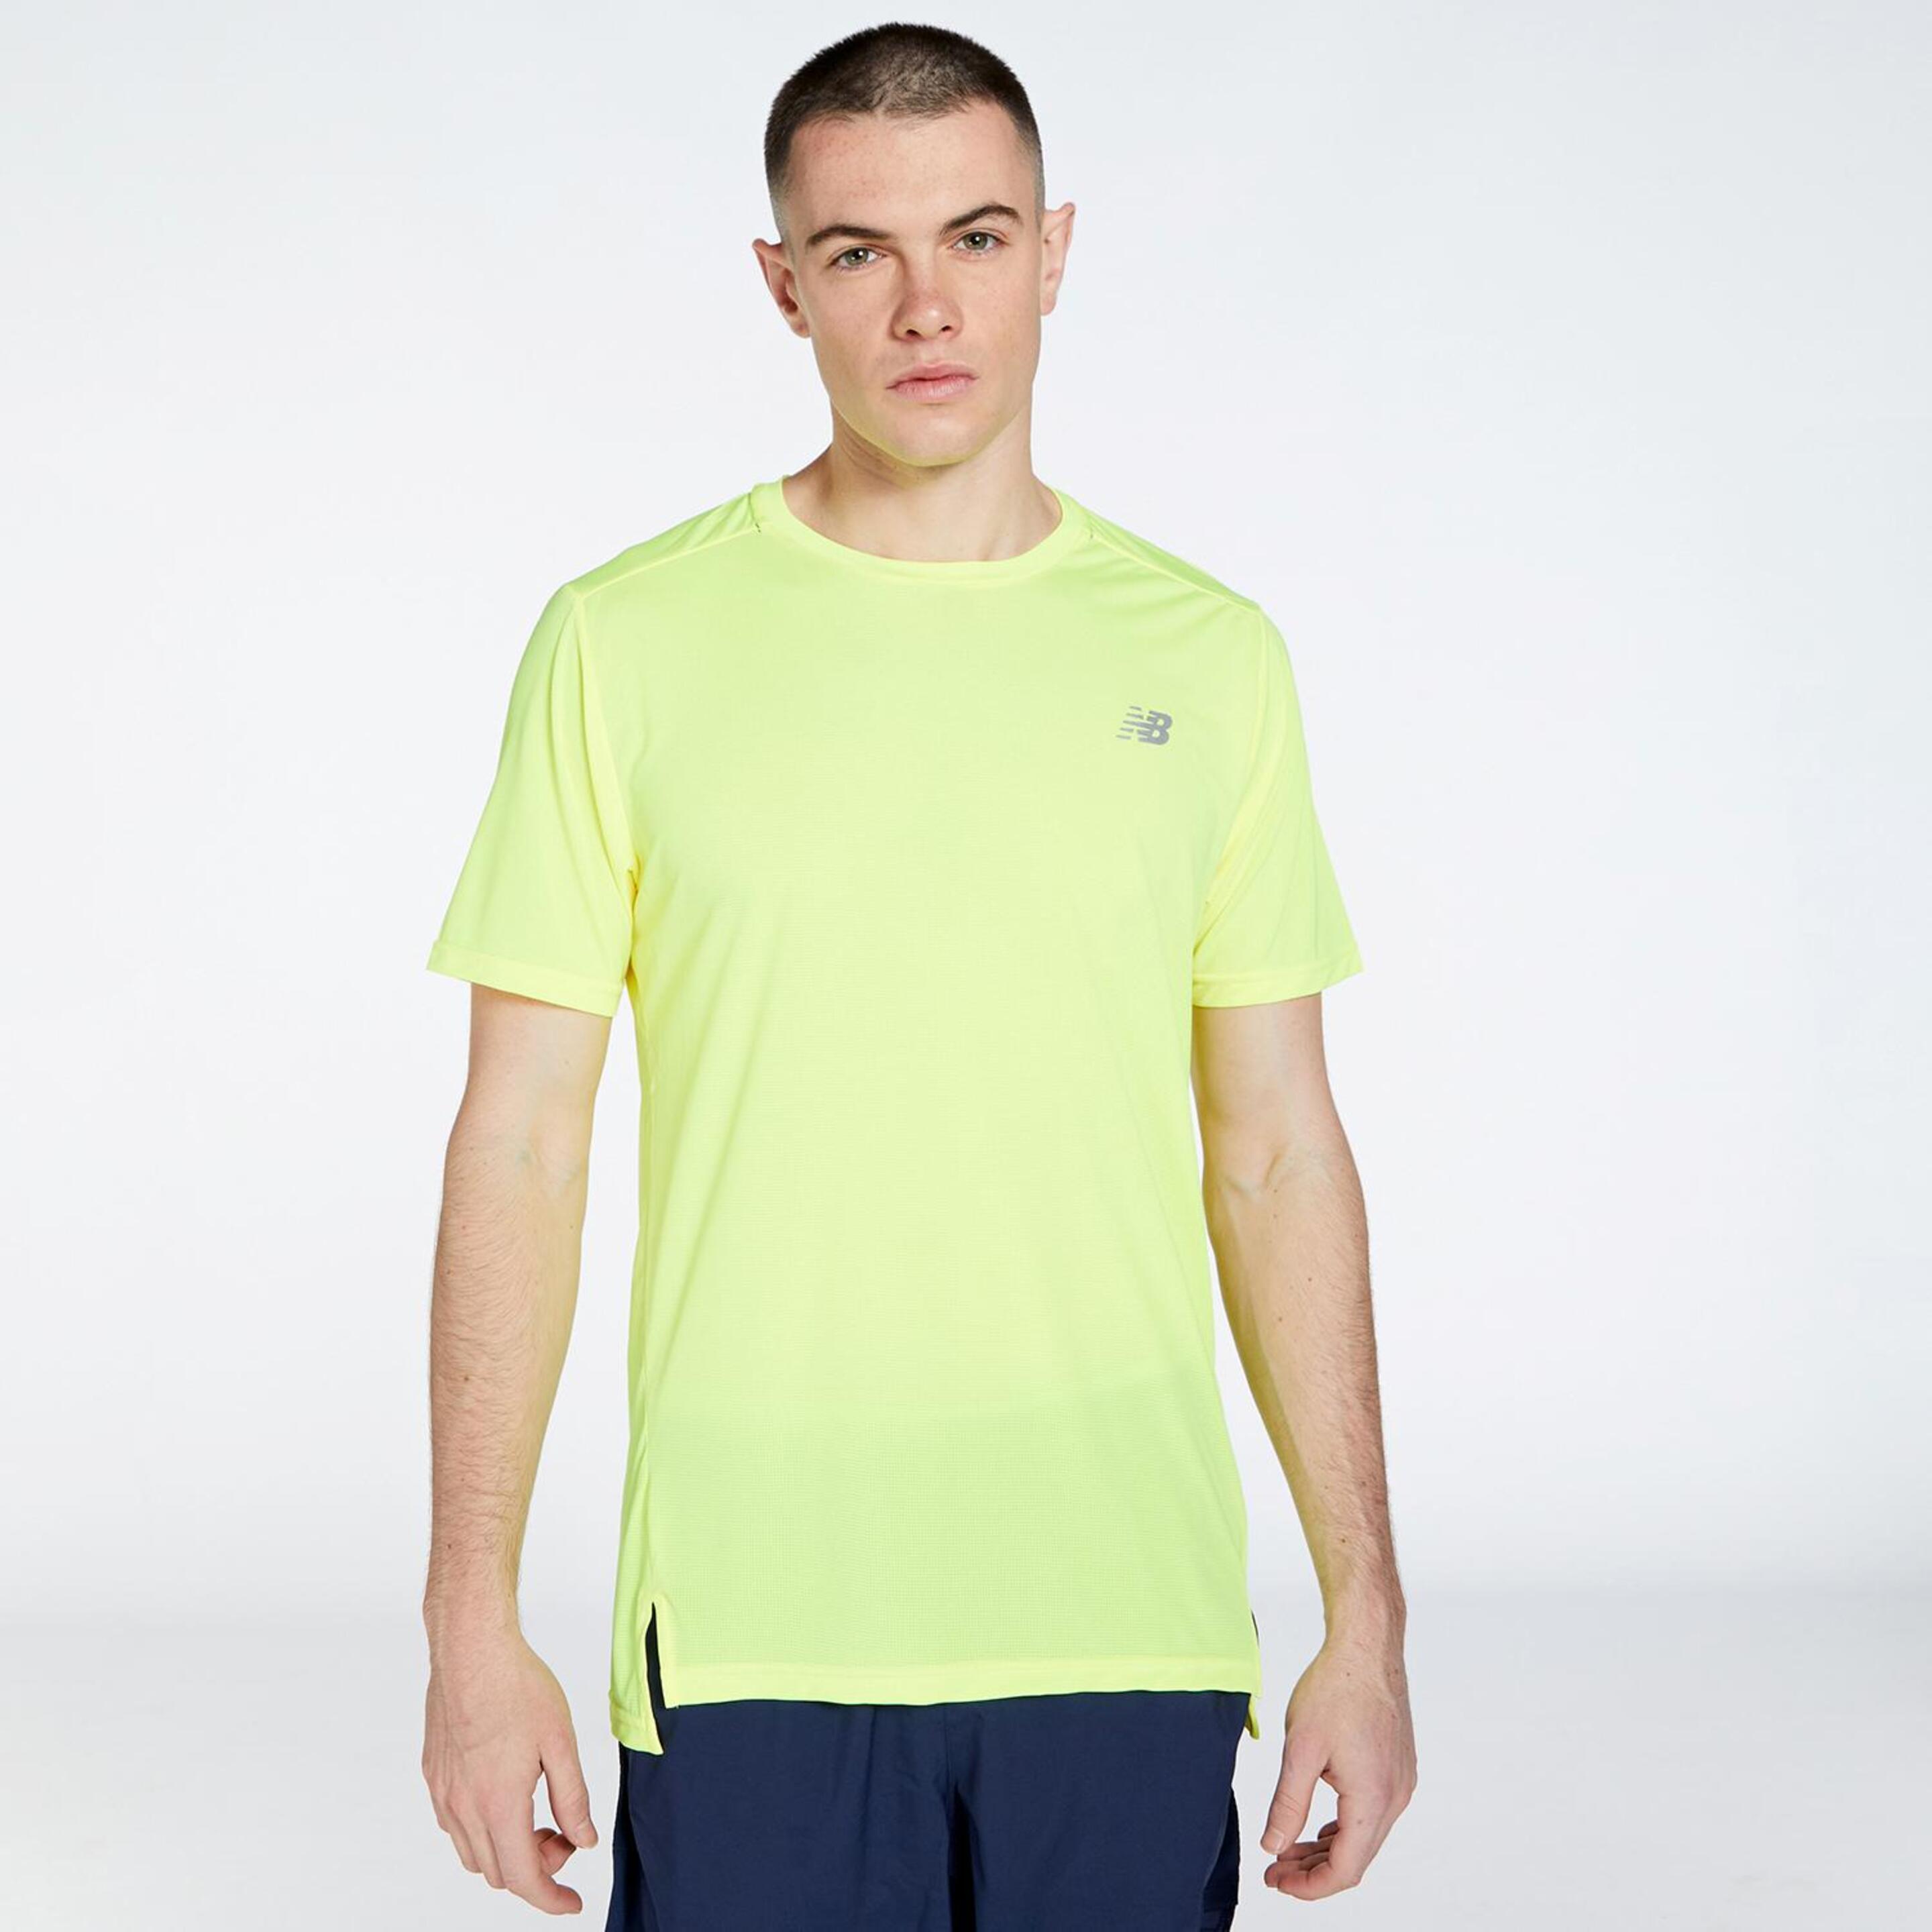 New Balance Accelerate - verde - T-shirt Running Homem